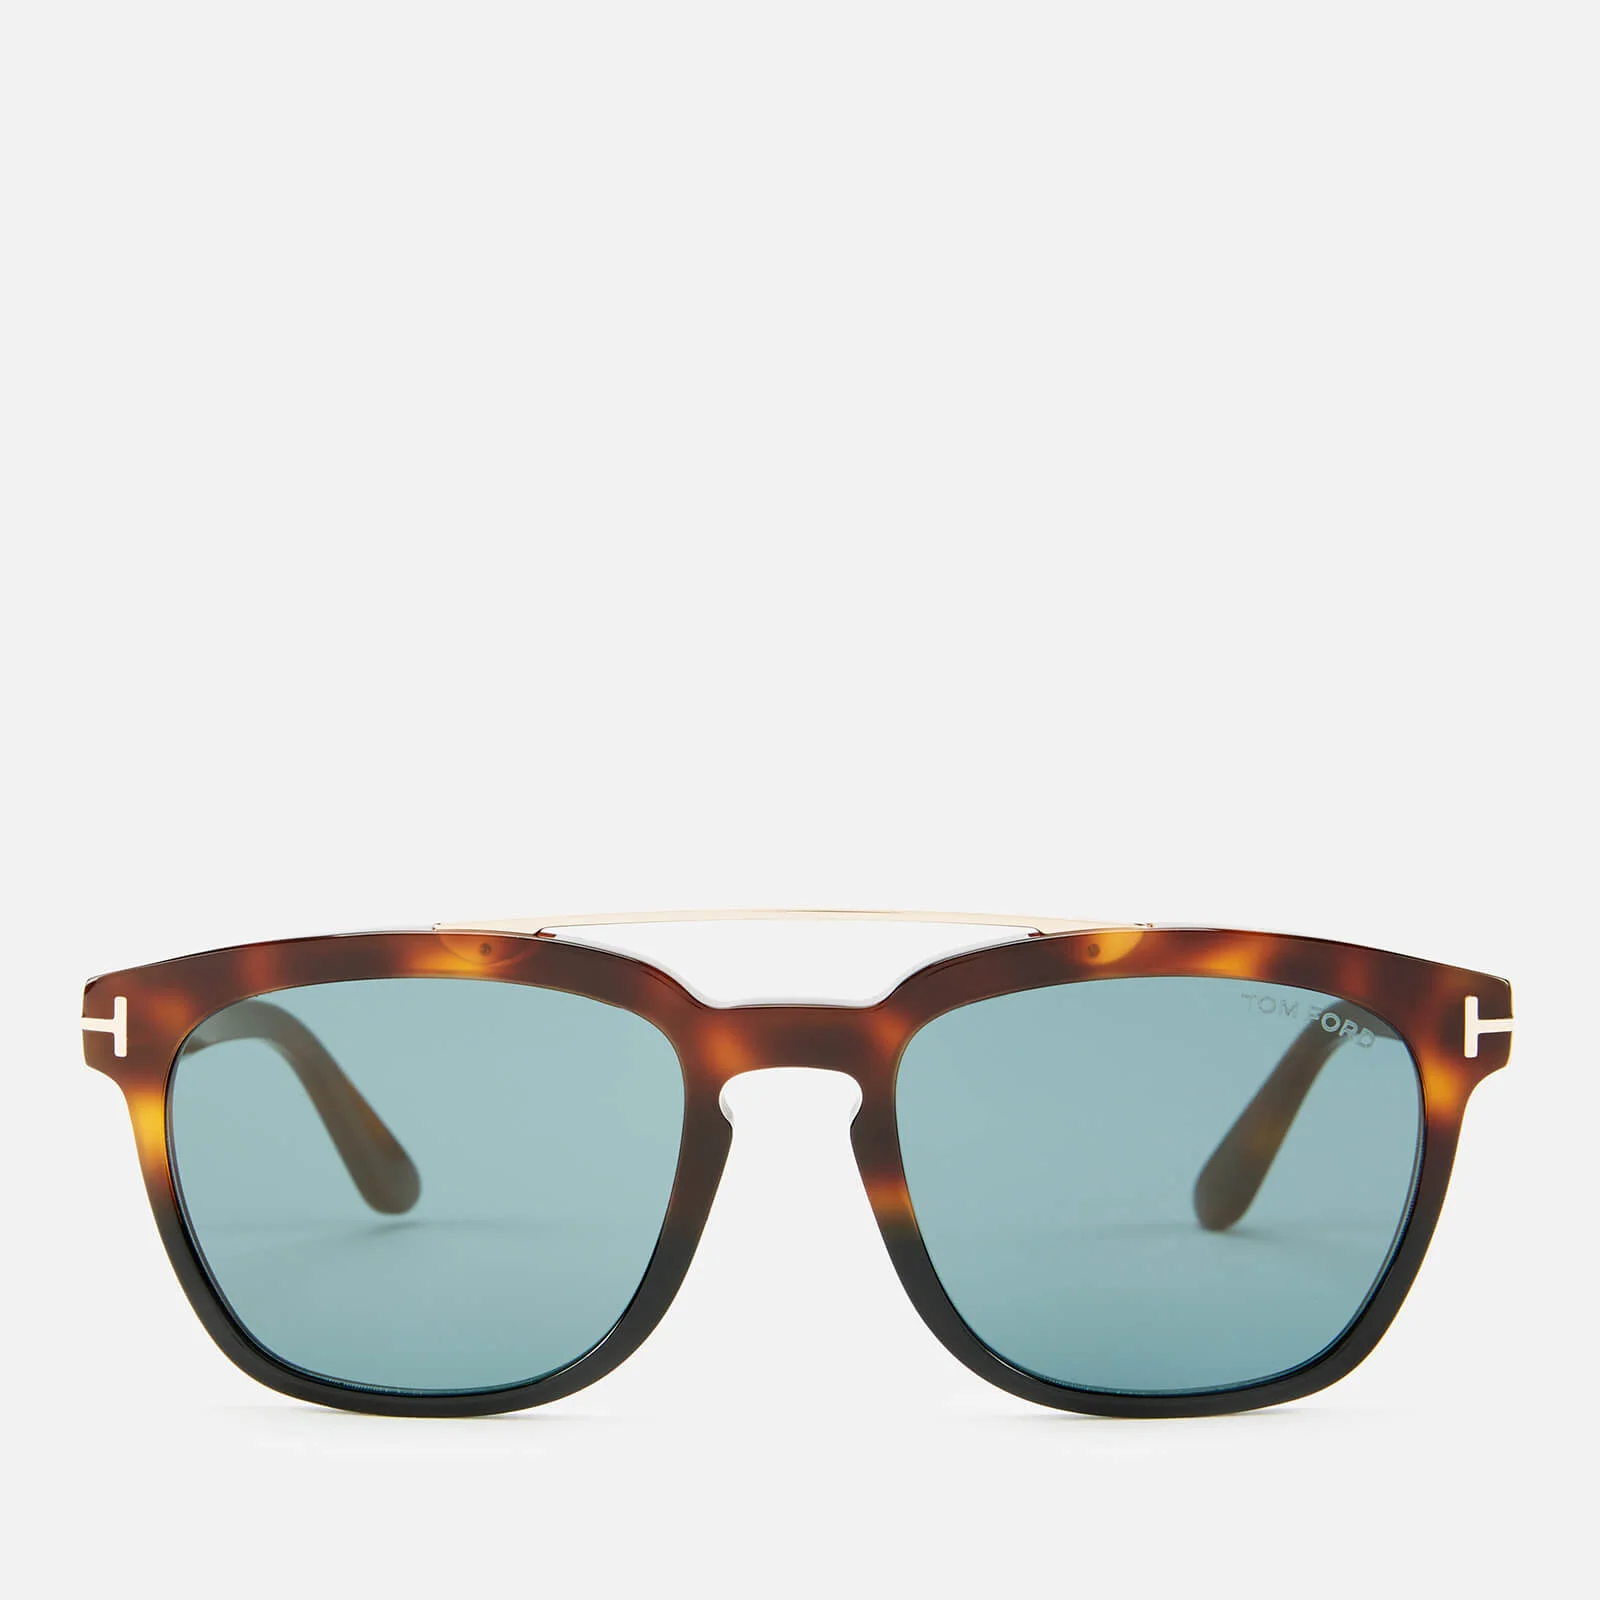 Tom Ford Men's Holt Sunglasses - Havana/Green Image 1